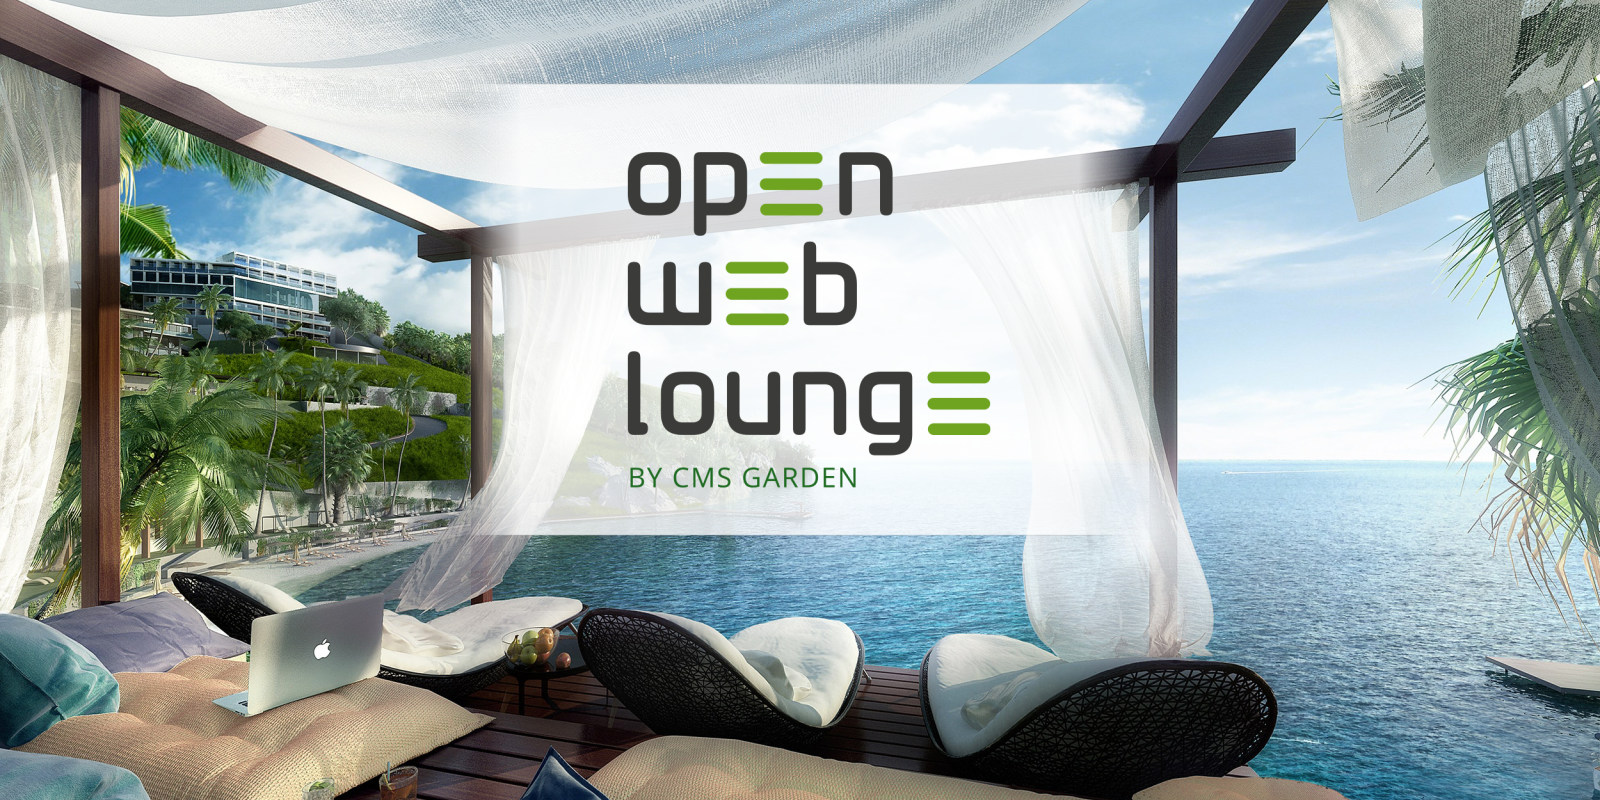 Veranstaltungslogo: Open Web Lounge by CMS Garden, fotografischer Hintergrund: Freiluft-Lounge beschattet von weißem Stoff, Ausblick über eine Bucht